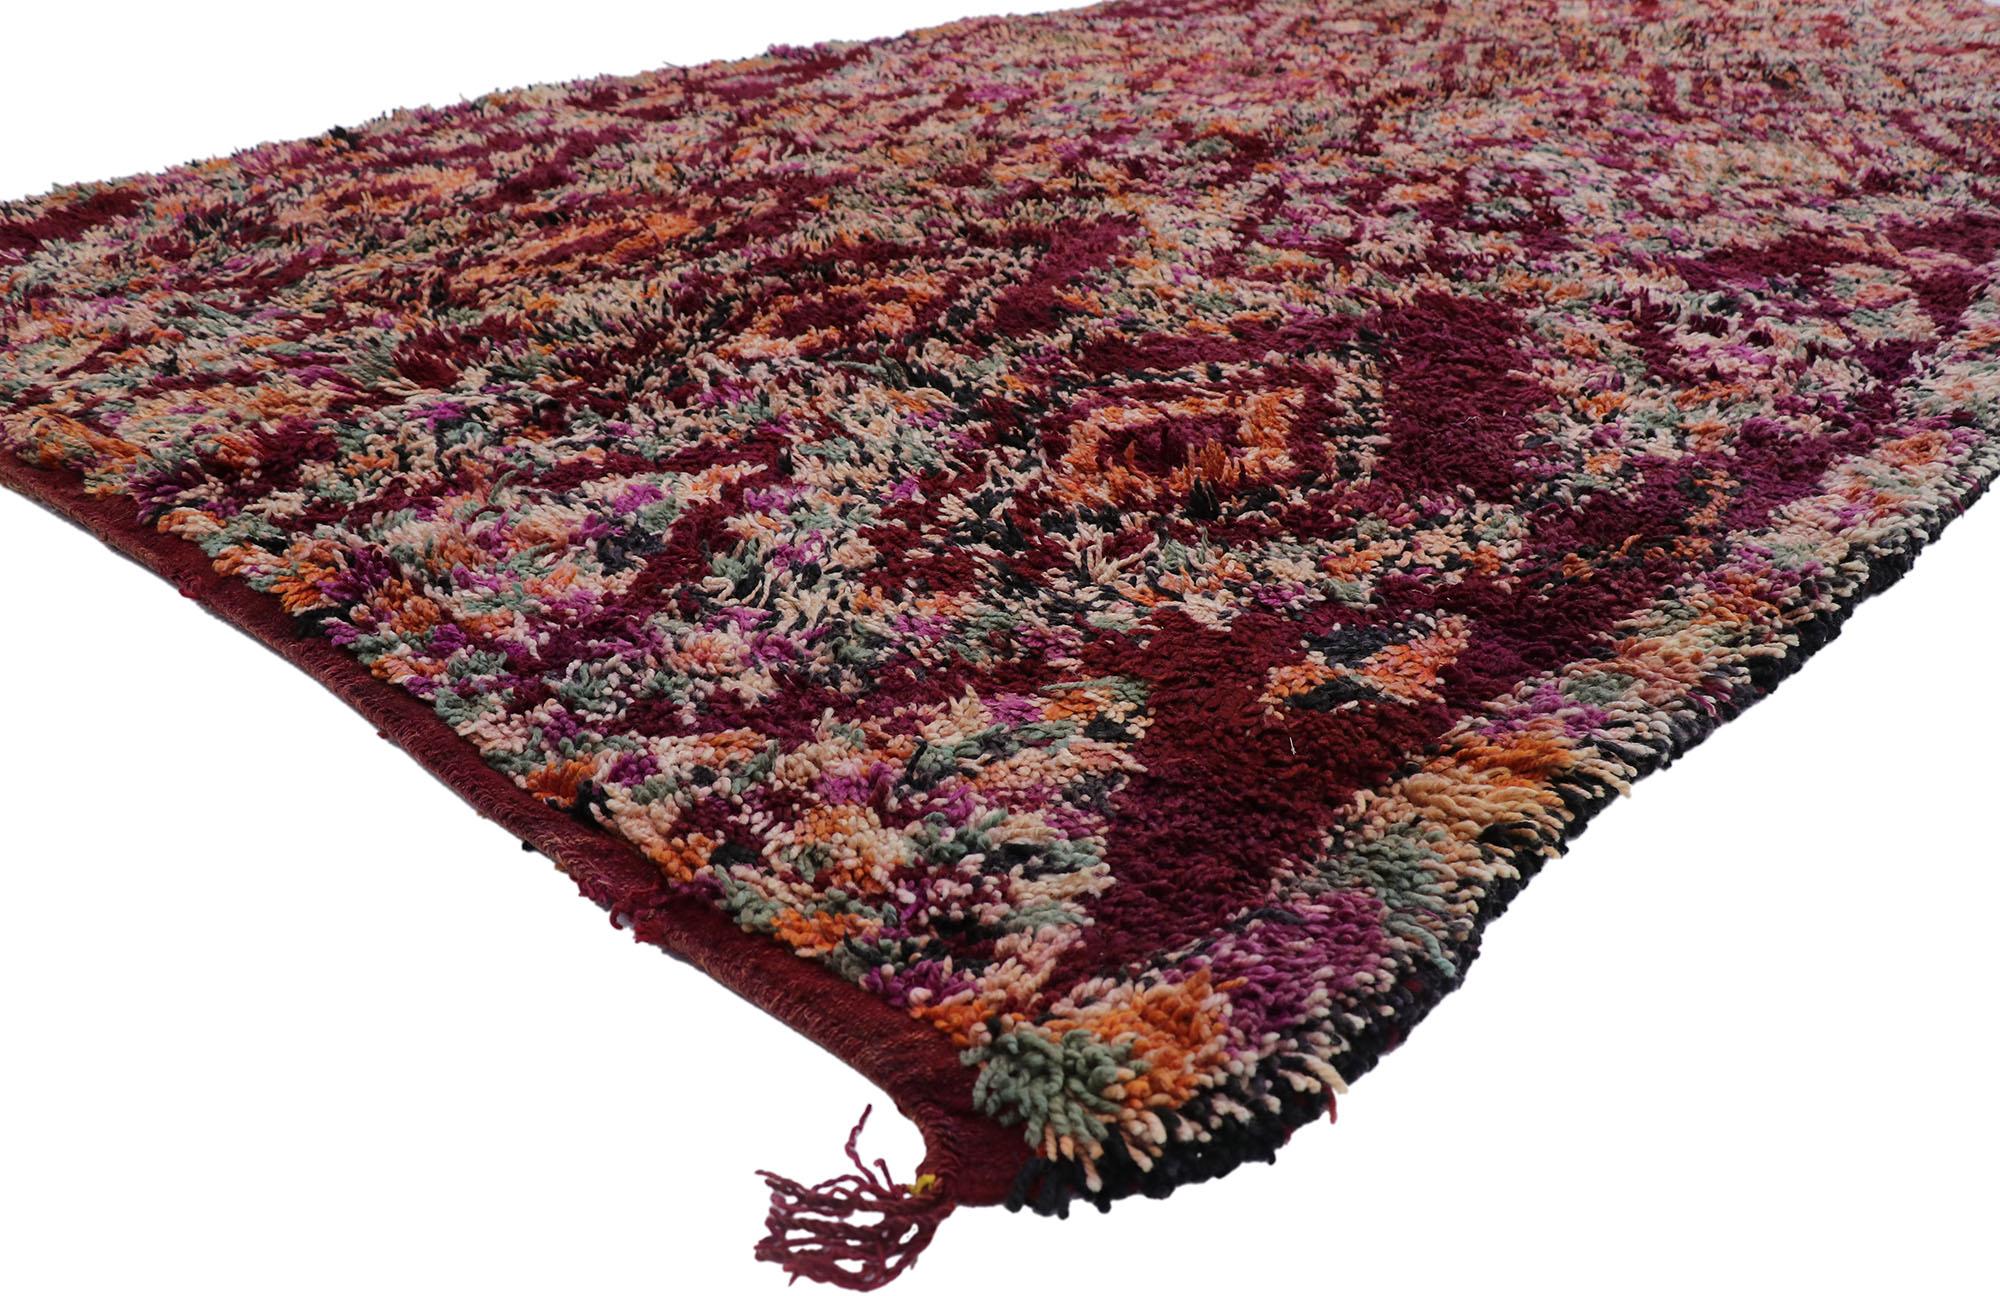 21224 Vintage Berber Beni M'Guild Marokkanischer Teppich mit böhmischem Stil 07'00 x 13'05. Dieser handgeknüpfte marokkanische Beni M'Guild-Teppich aus alter Berberwolle besticht durch sein kühnes, ausdrucksstarkes Design, seine unglaublichen